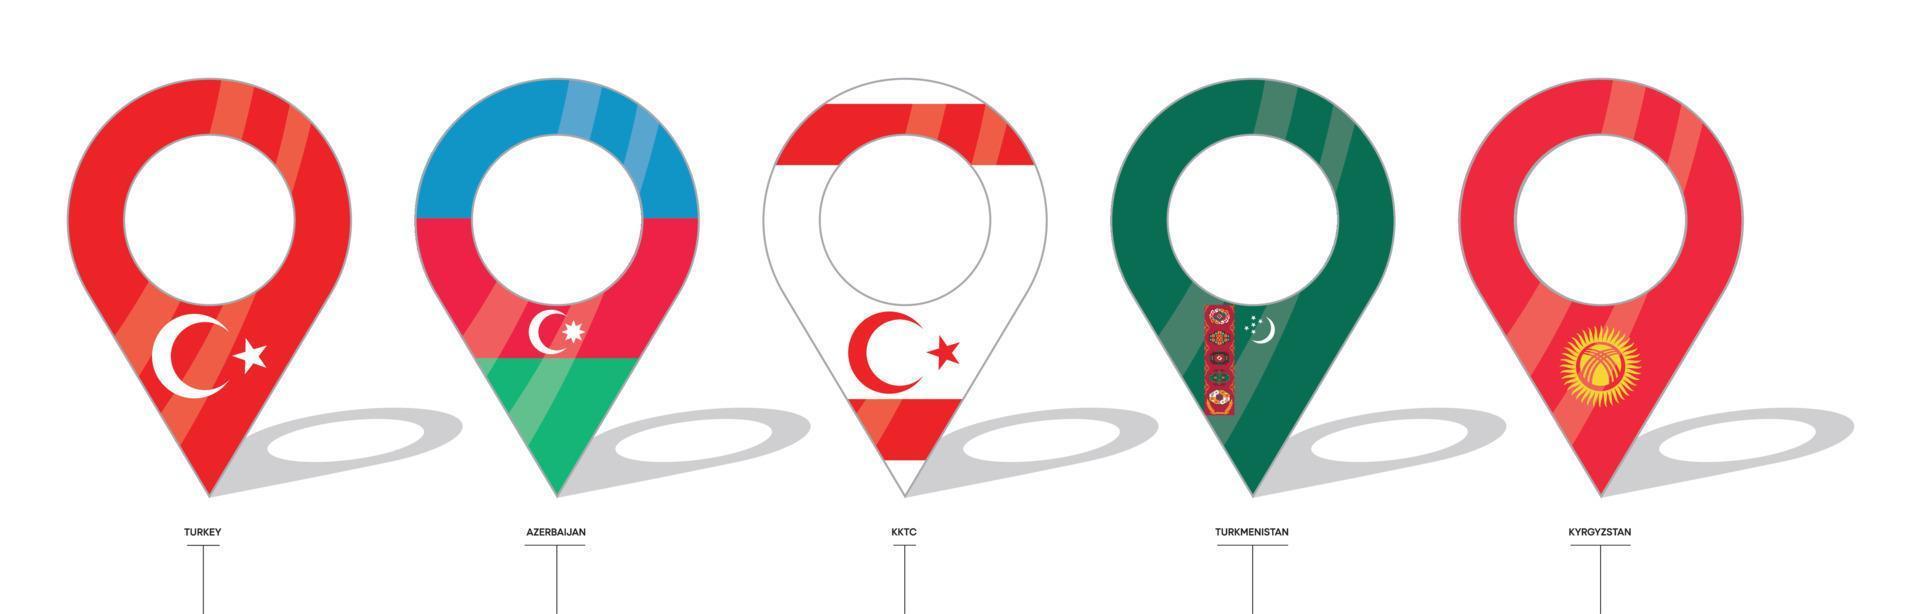 segno di posizione della bandiera del paese. icone della bandiera di turchia, azerbaigian, trnc, turkmenistan e kirghizistan. bandiere di paesi con check-in. icona vettoriale di forme semplici di punto di posizione.